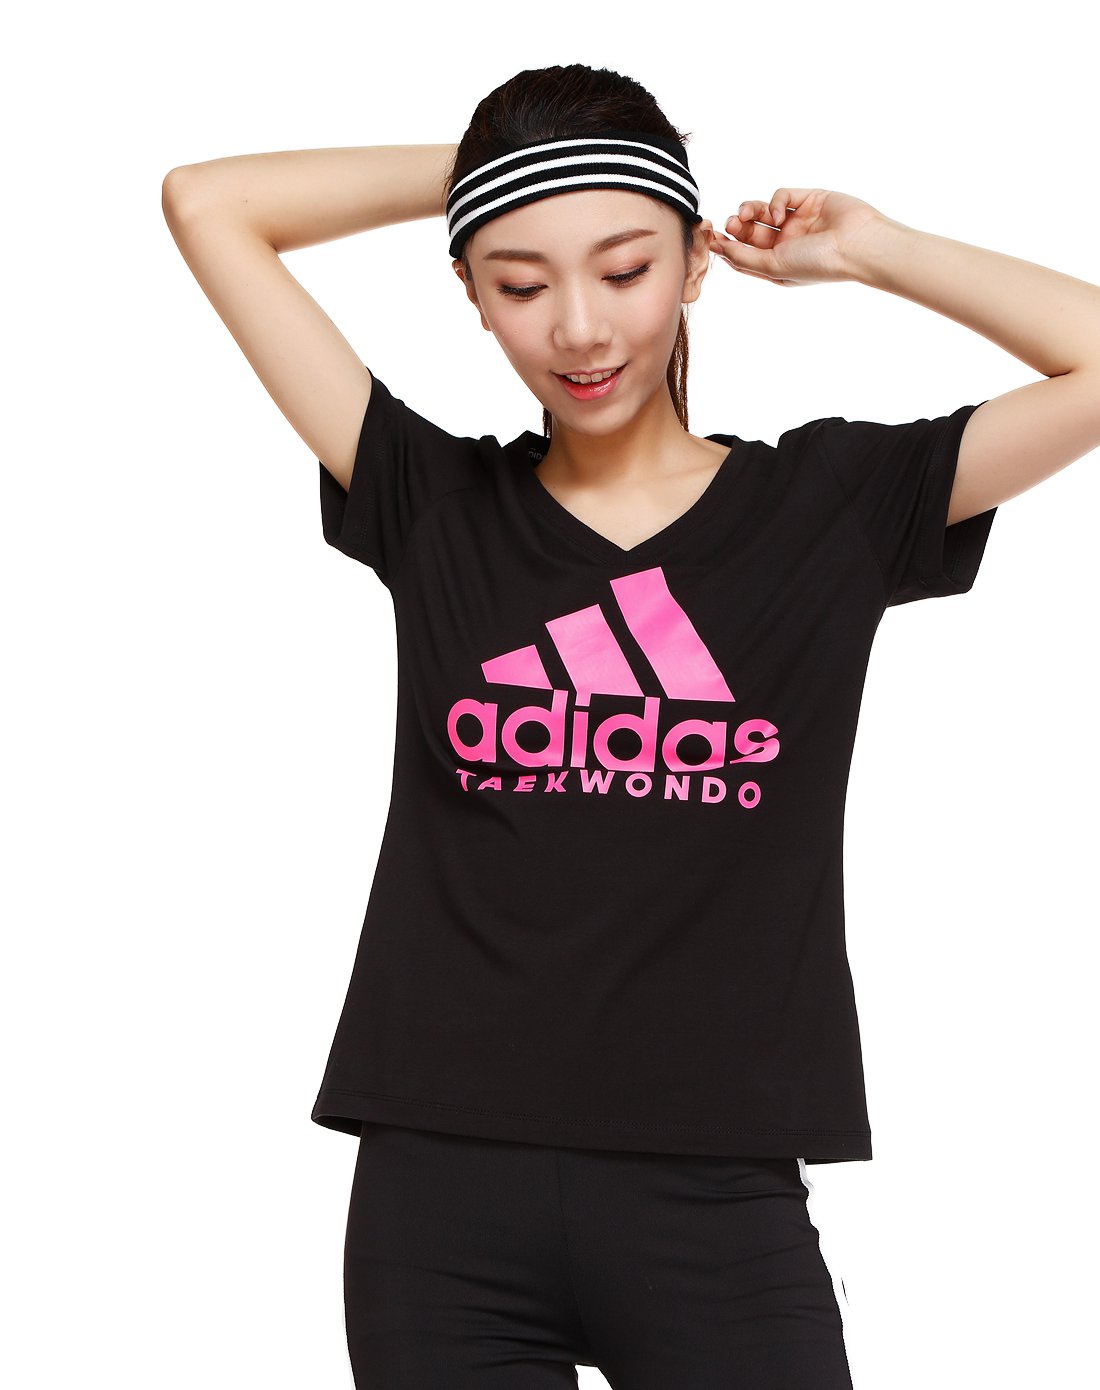 阿迪达斯adidas武道系列女装短袖T恤-ADICTTW-BP